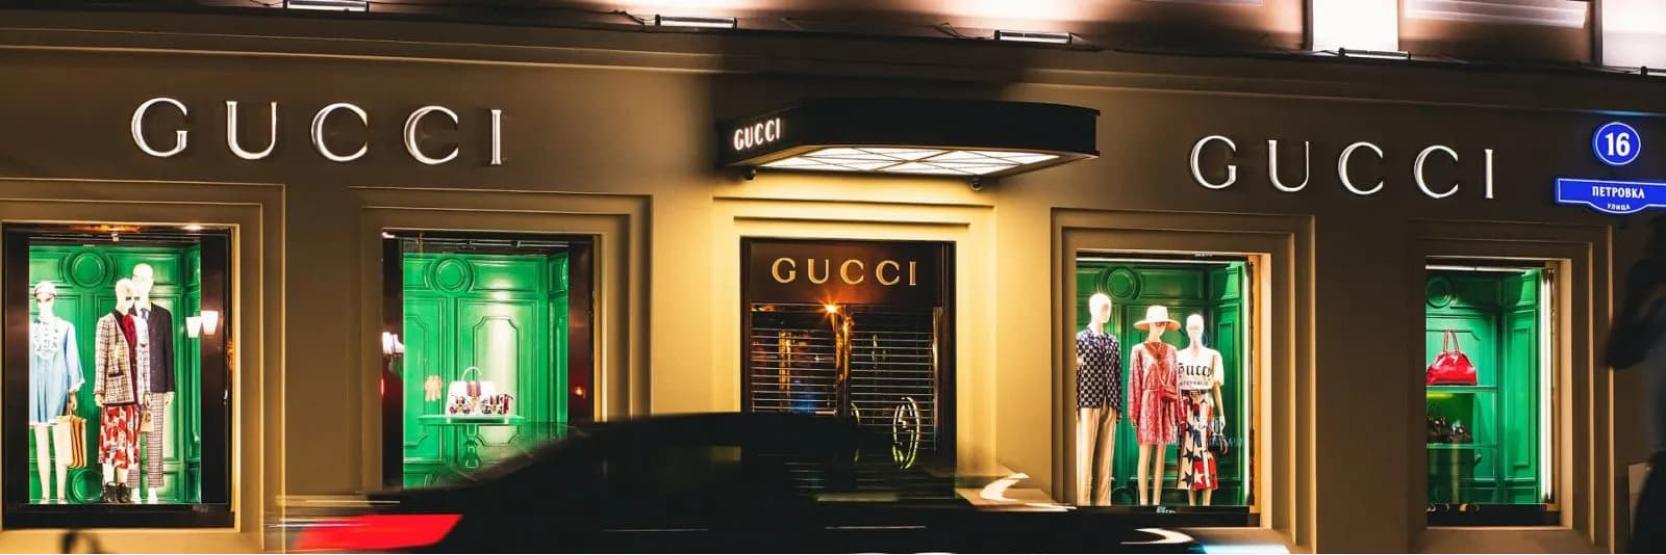 ما الذي يجعل ماركة Gucci أحد أشهر العلامات التجارية؟